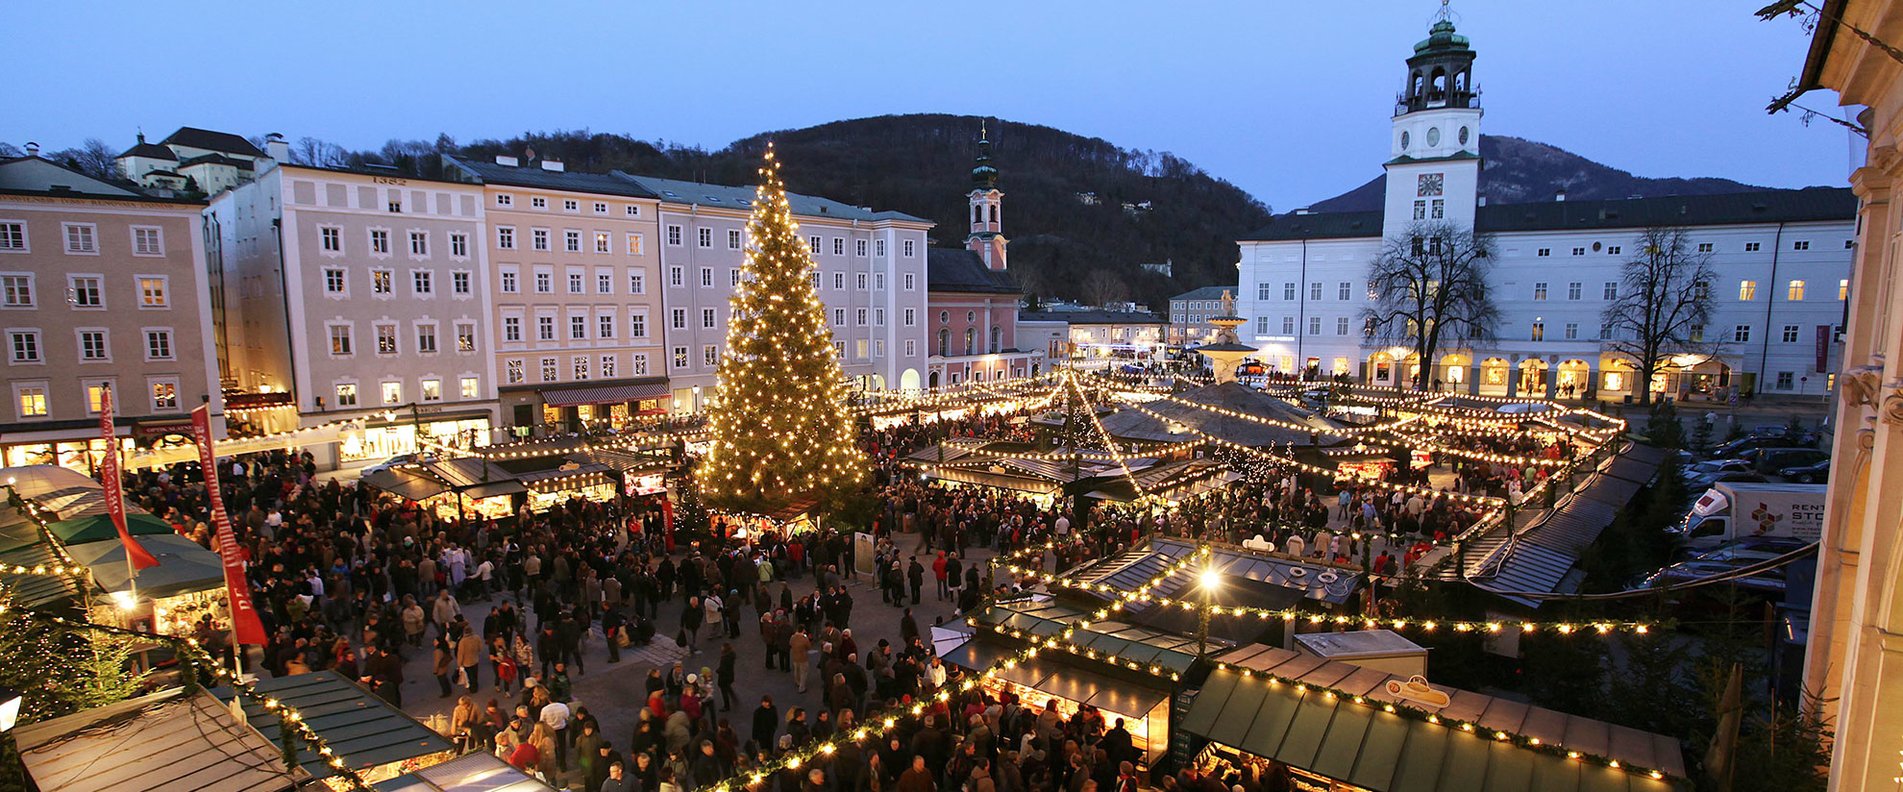 Weihnachtsmärkte in der Altstadt Salzburg | © www.christkindlmarkt.co.at,Salzburg